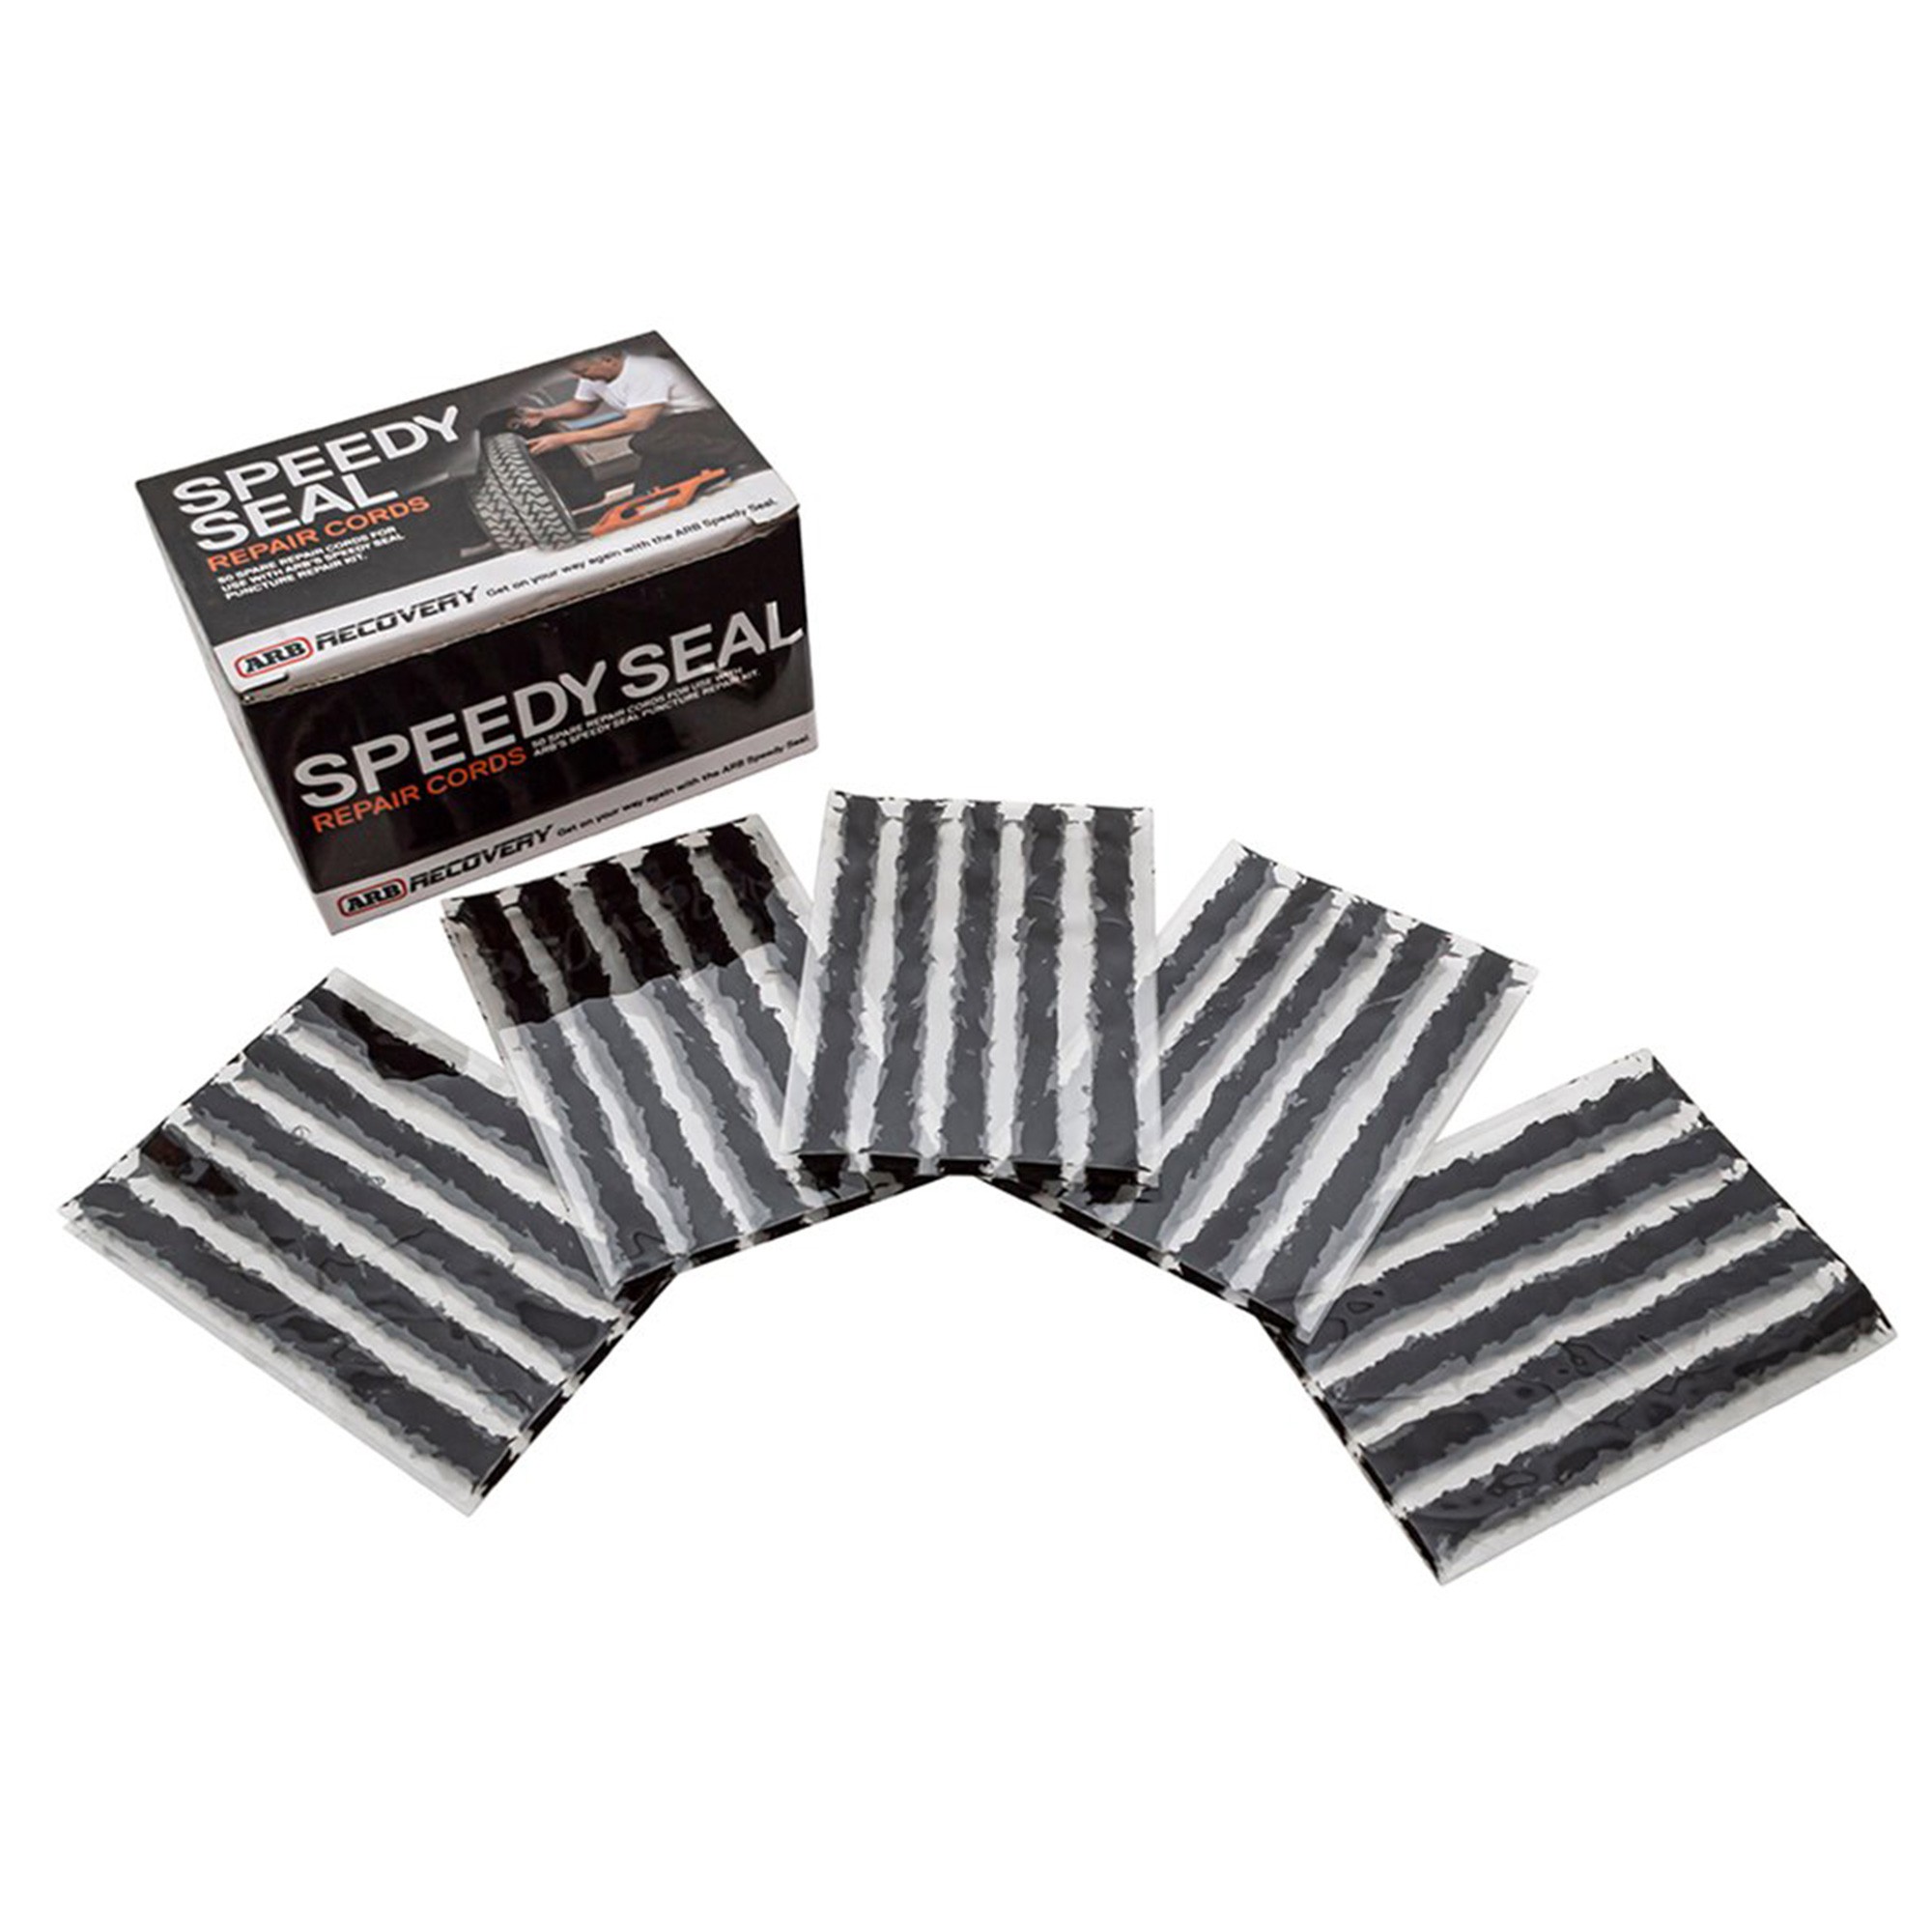 Speedy Seal Spare Cords x 50 - ARB